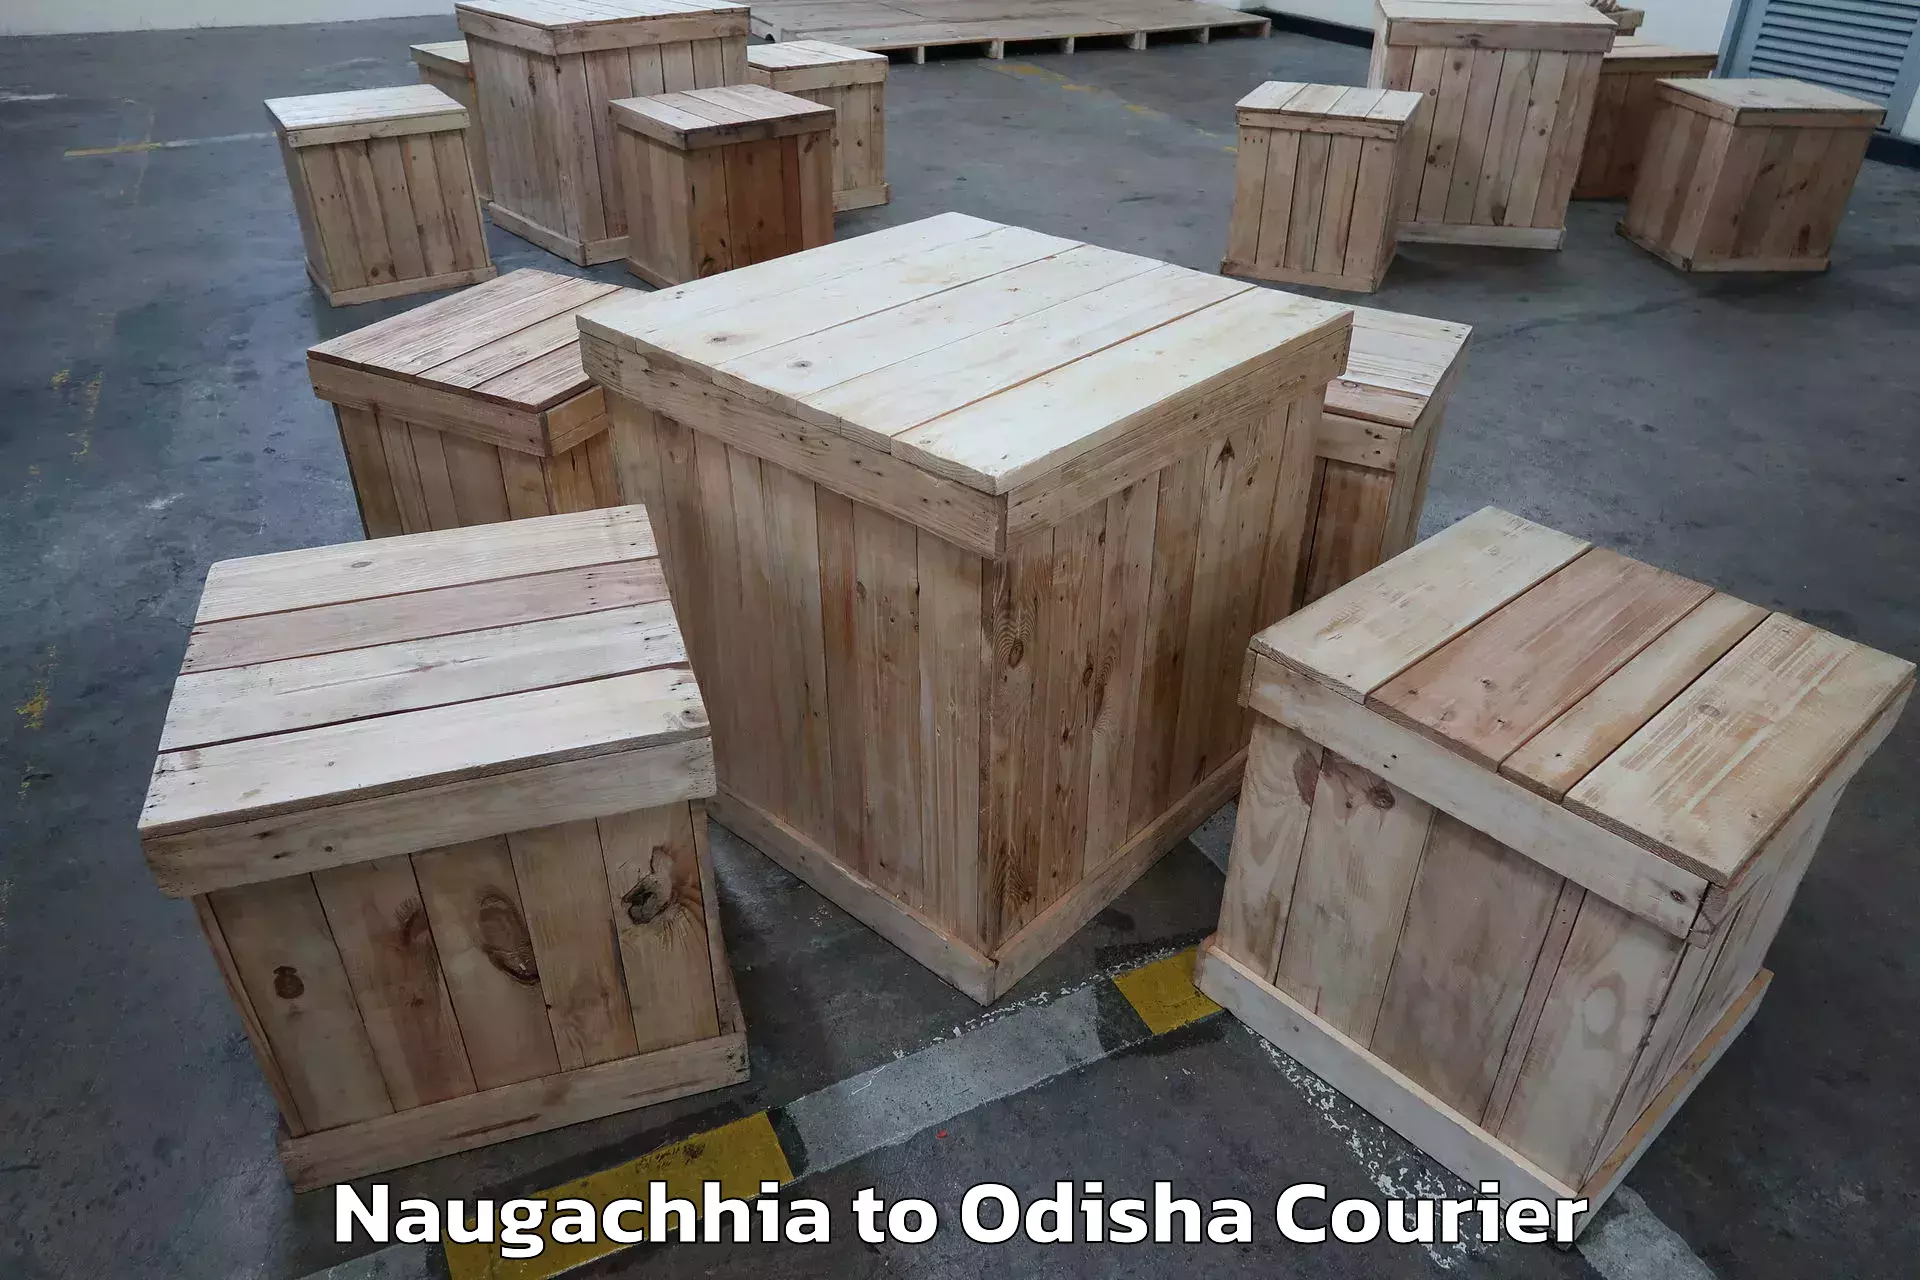 Furniture transport experts Naugachhia to Kesinga